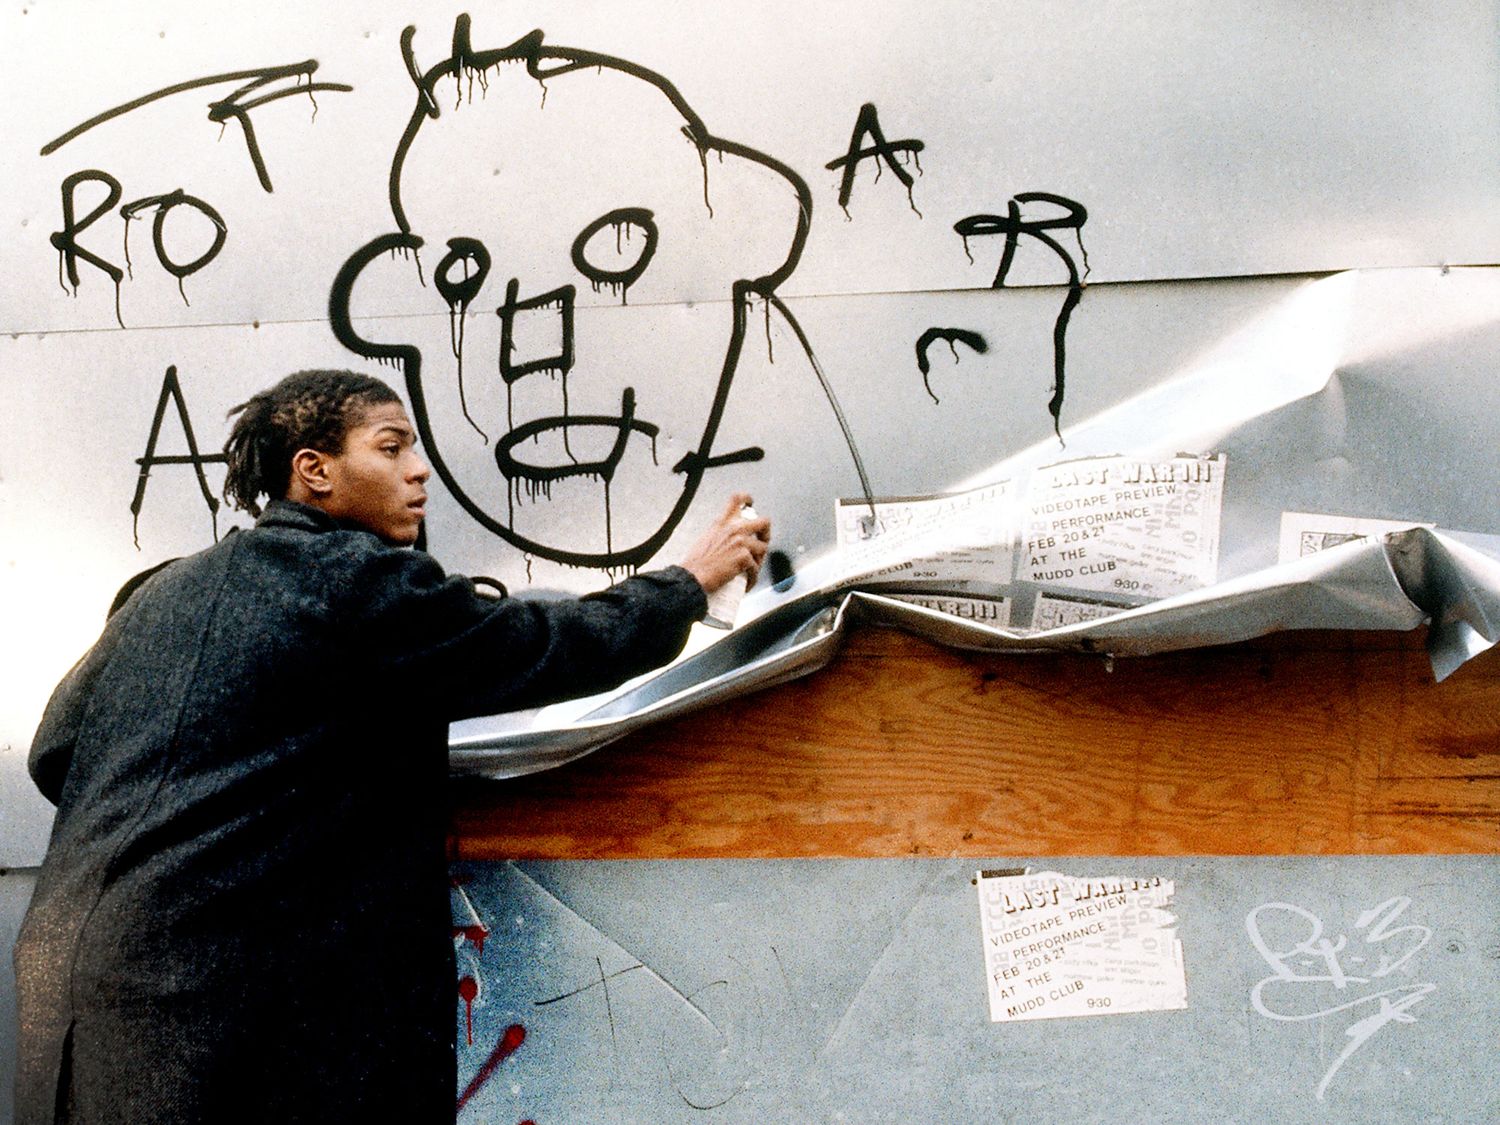 Jean-Michel Basquiat pris sur le vif en train de peindre à la bombe dans les rues de New York pour le film Downtown 81 tourné entre 1980-81 mais seulement diffusé en 2001 (image tirée du film).